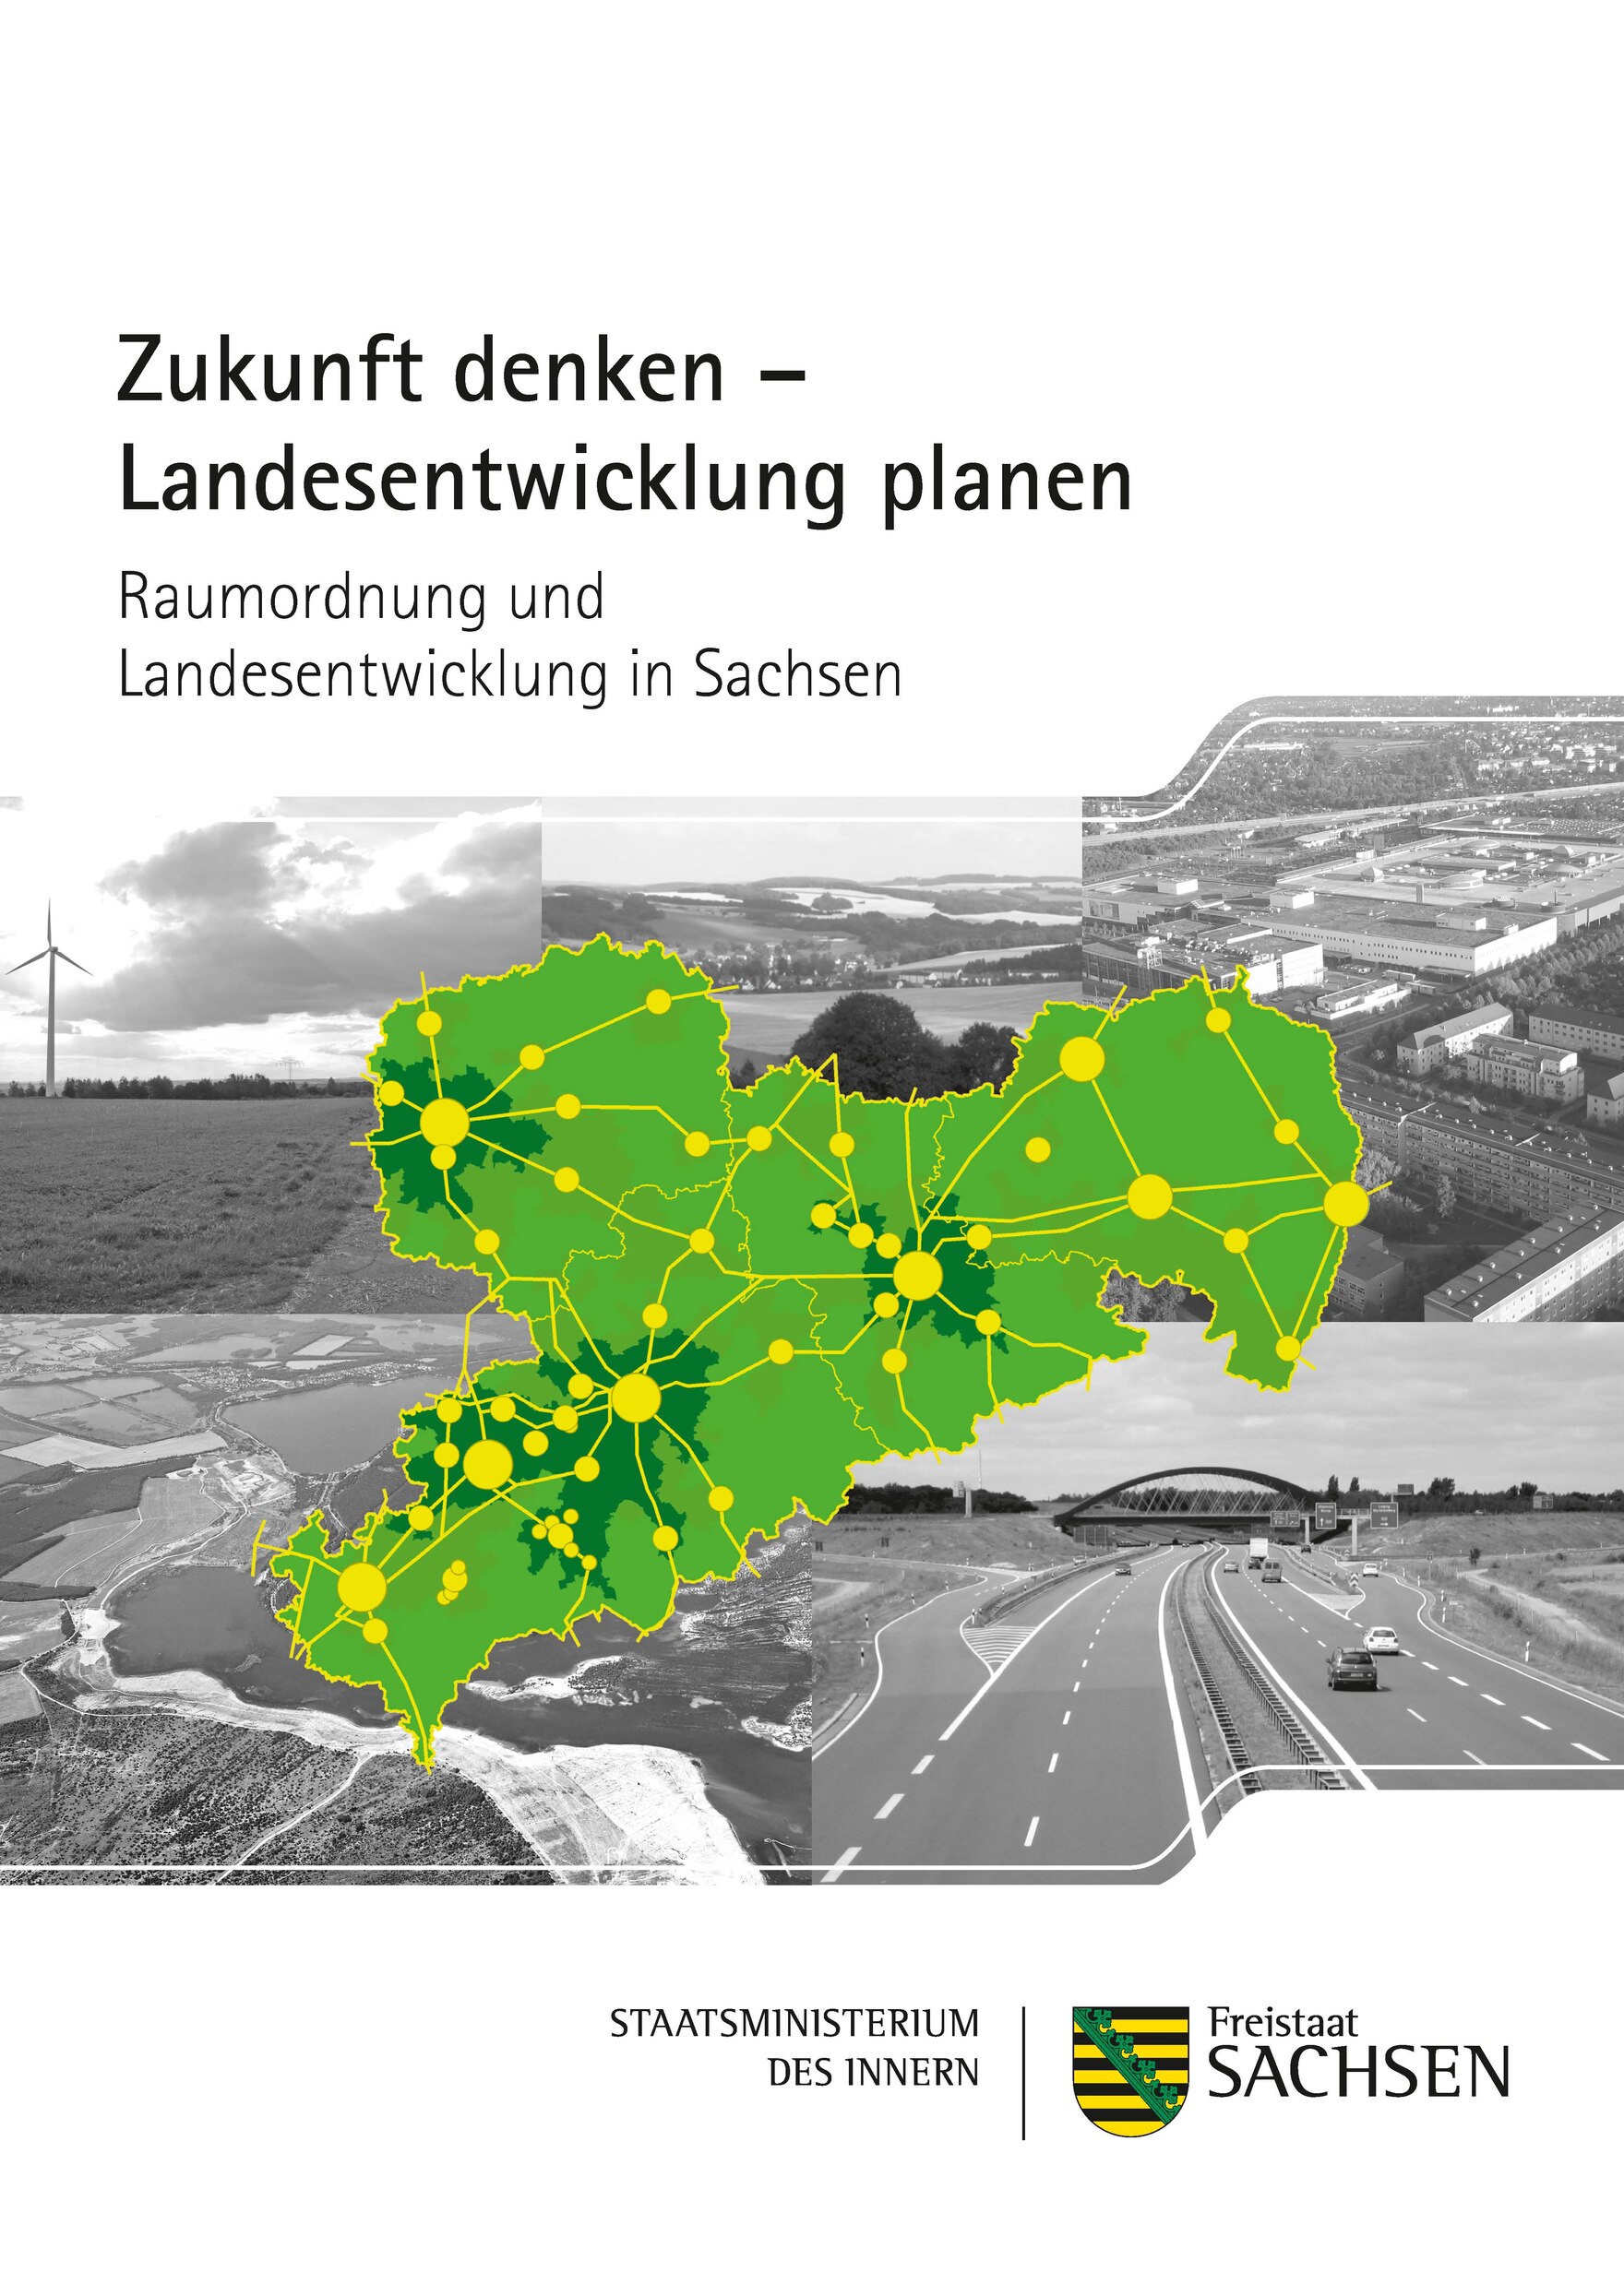 Titelbild Broschüre "Zukunft denken - Landesentwicklung planen"